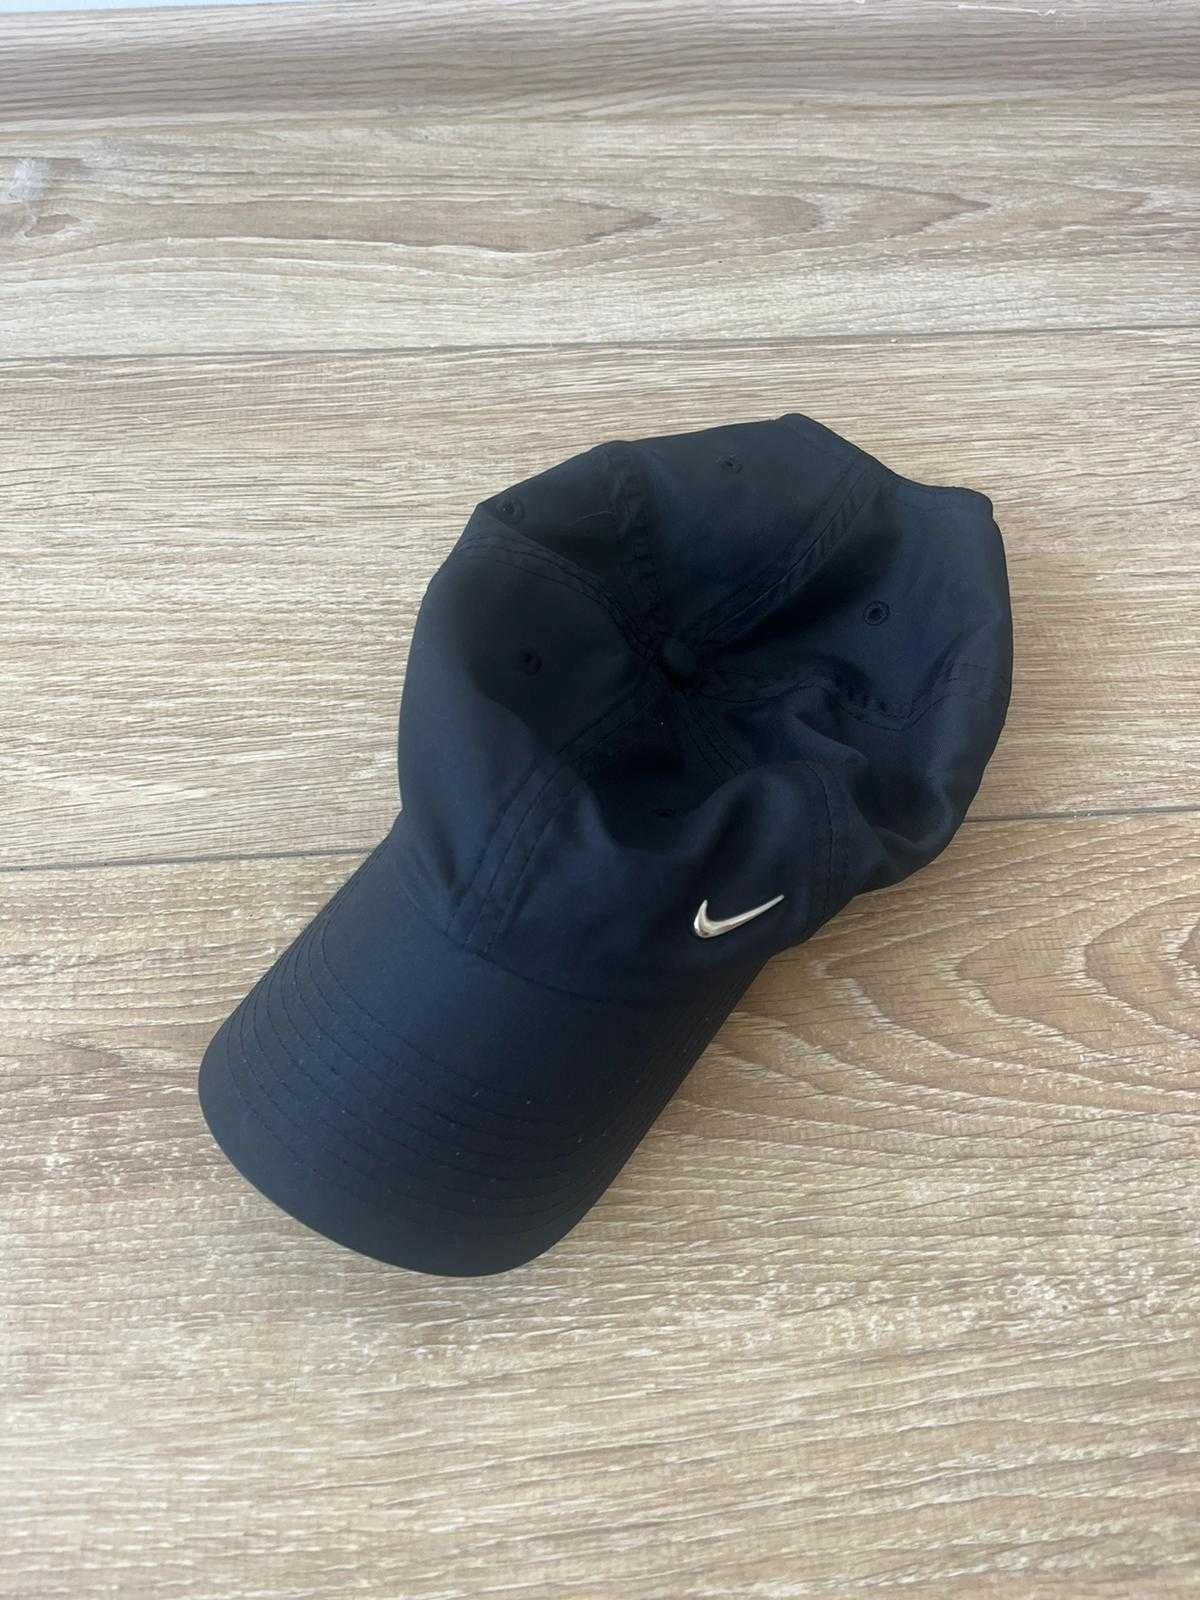 czapki z daszkiem Versace, NY, Nike